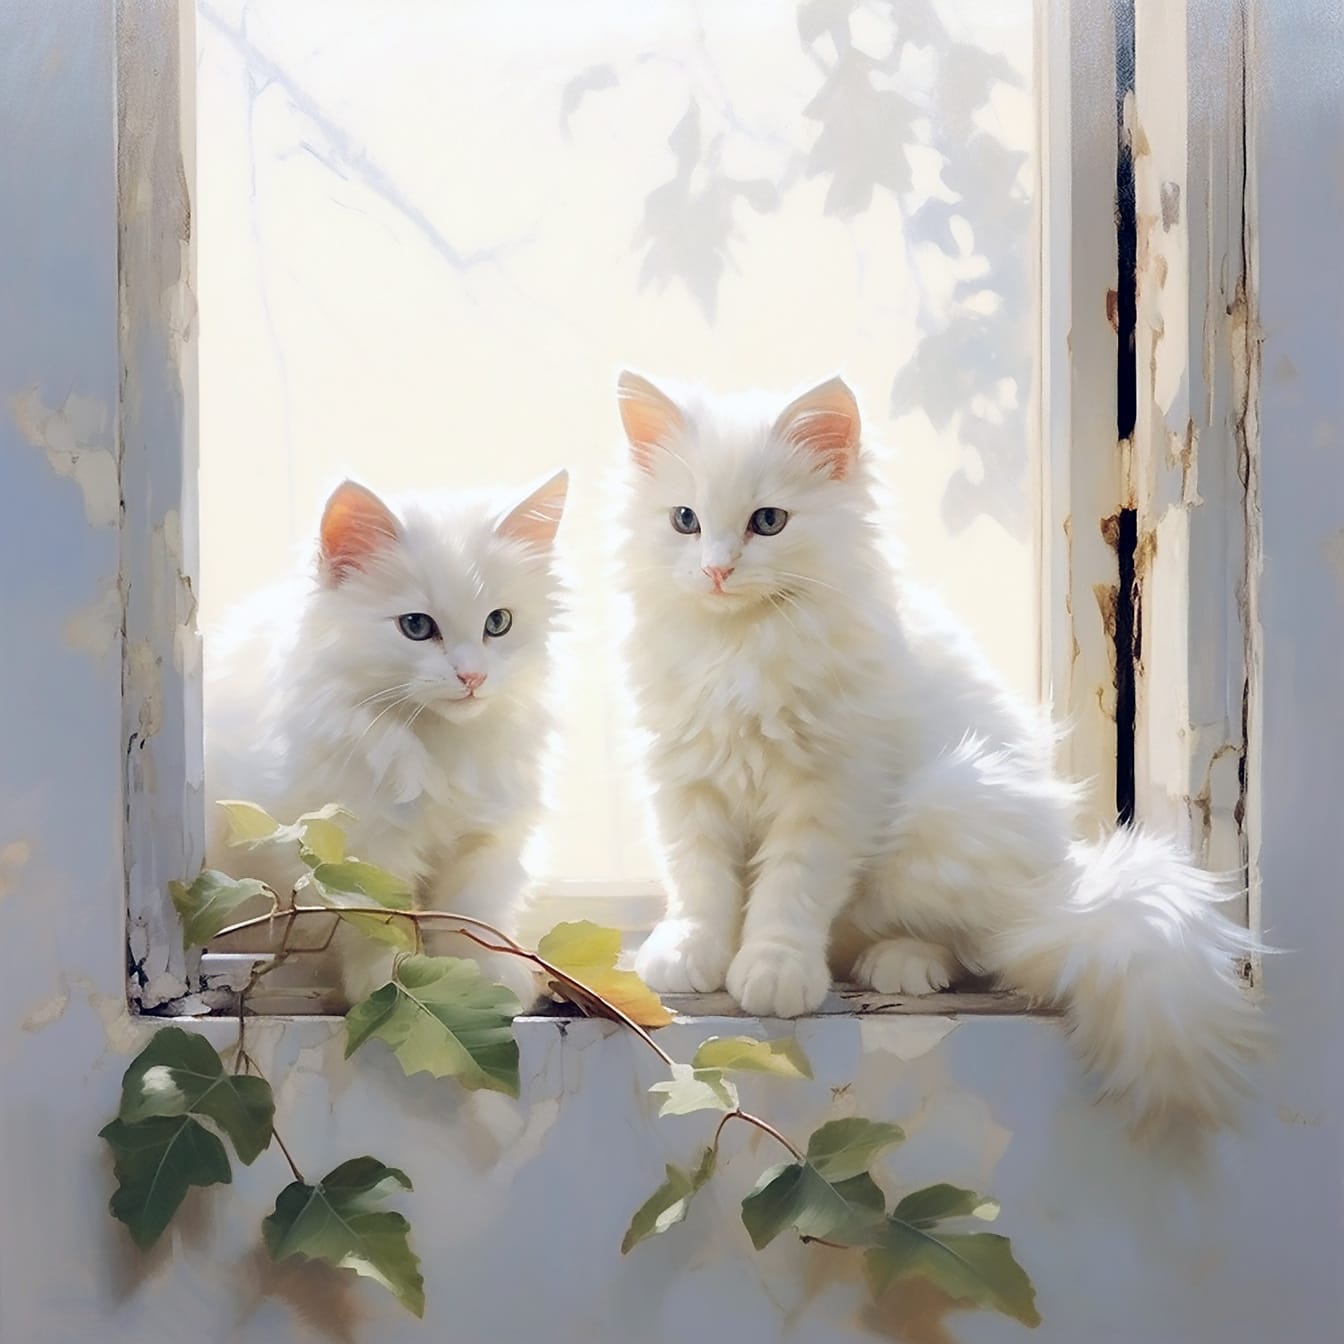 Bonitos gatitos blancos de angora sentados en la ilustración digital de la ventana vieja